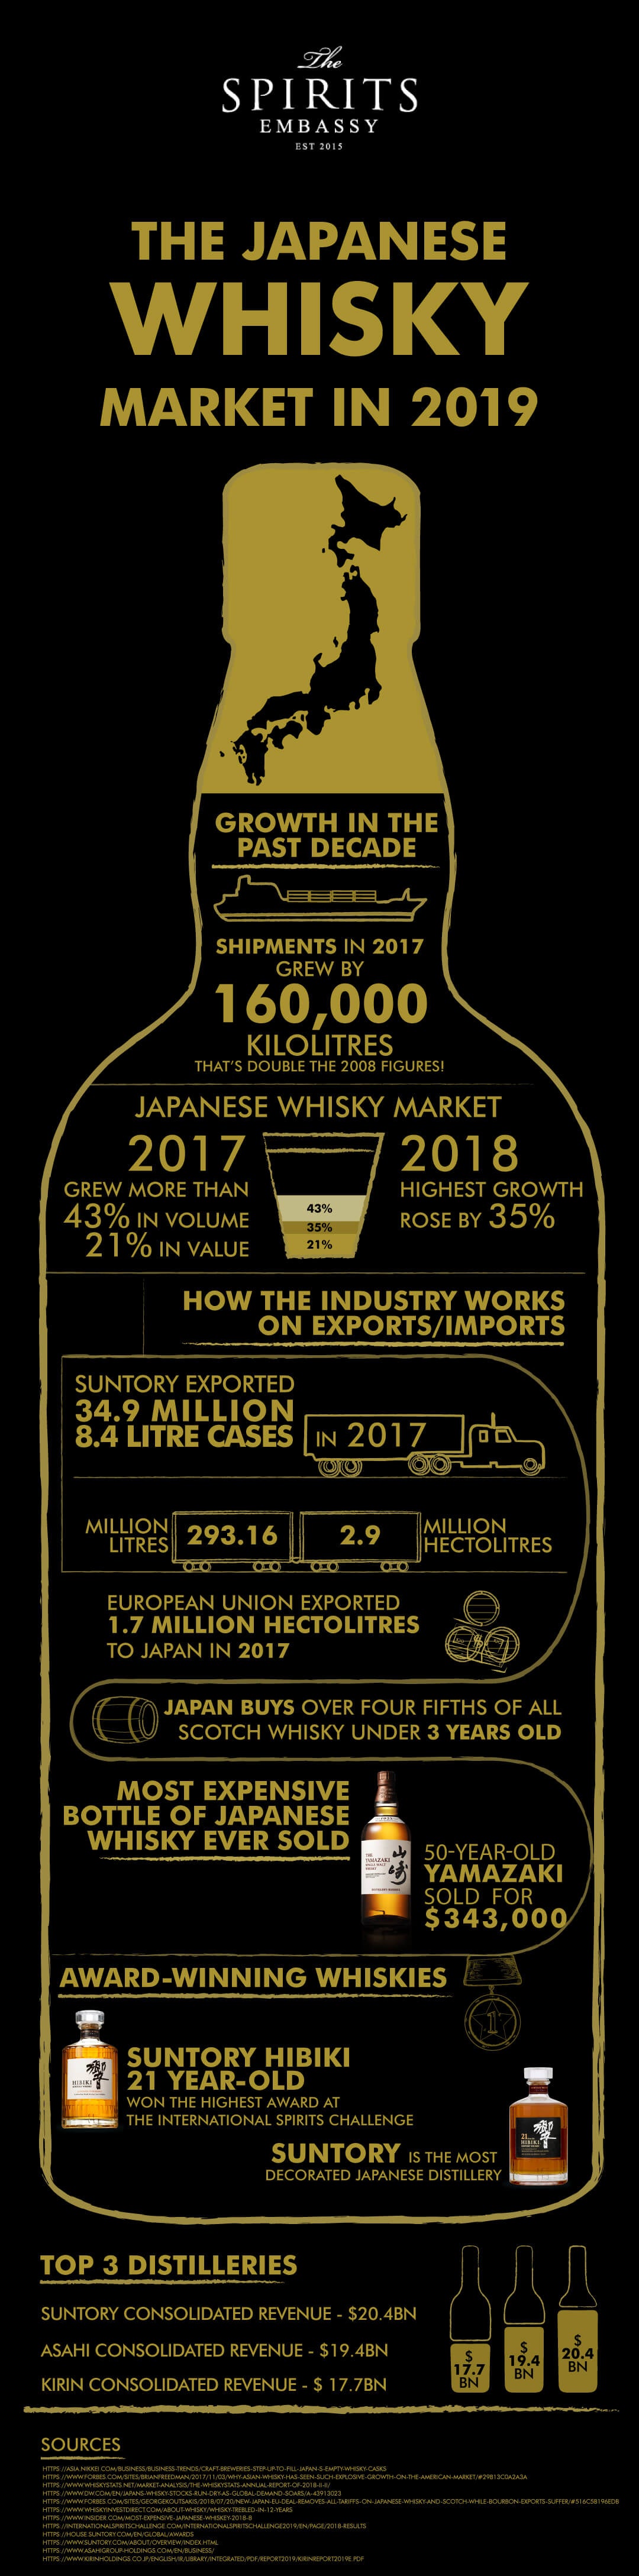 Japanese Whisky Market